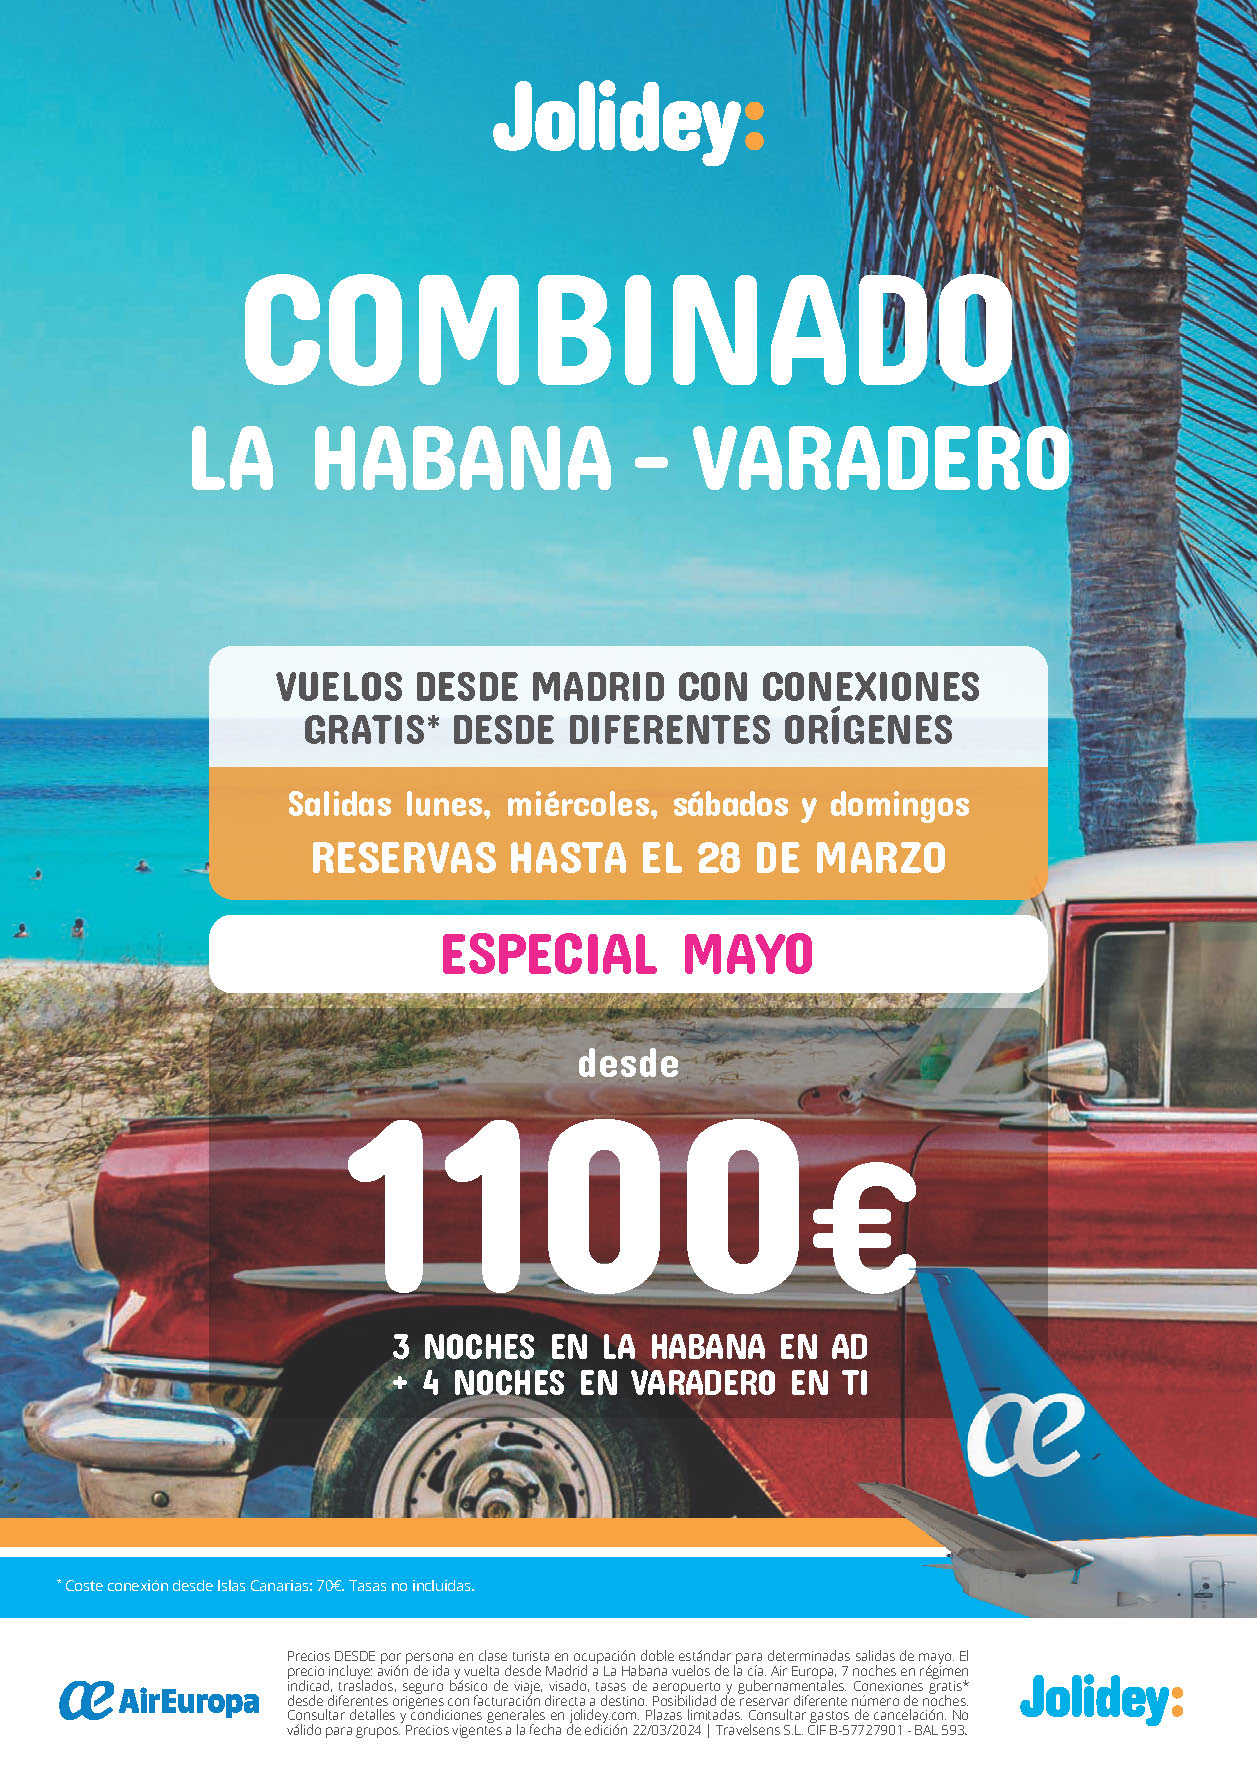 Oferta Jolidey Cuba Combinado La Habana Varadero AD TI 9 dias salidas Mayo 2024 vuelo directo desde Madrid conexiones gratis Peninsula